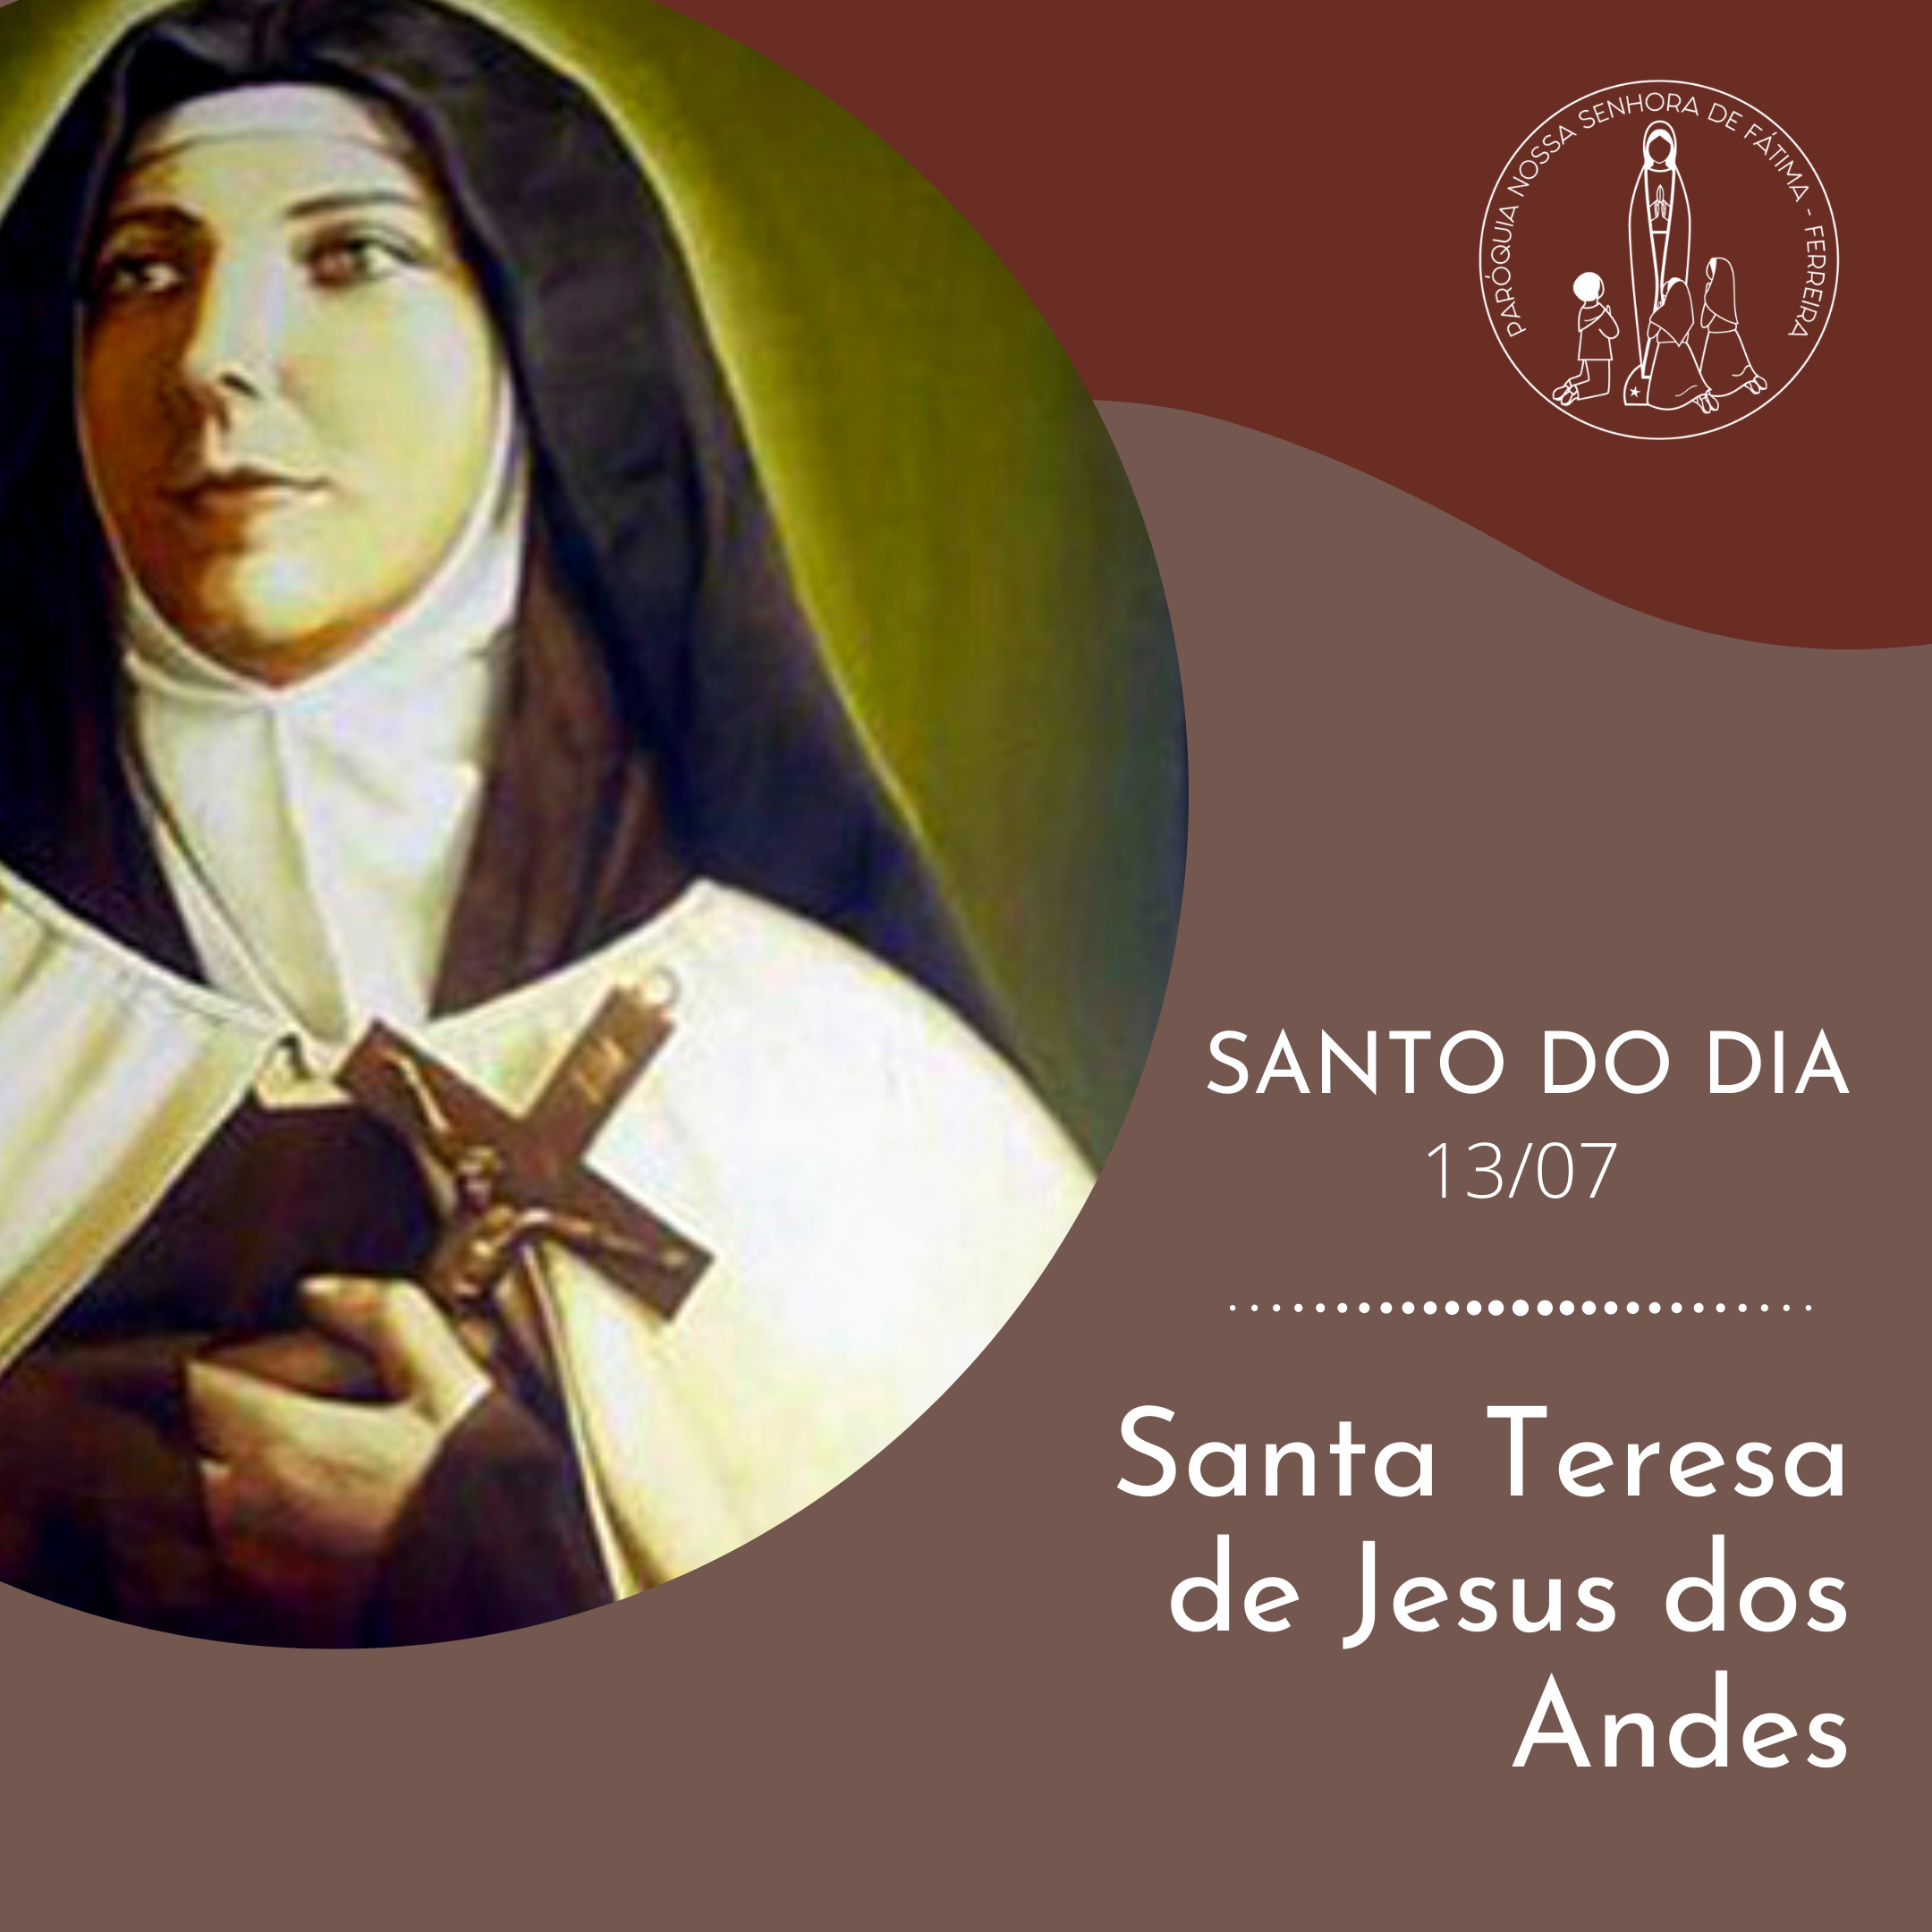 Santa Teresa de Jesus dos Andes